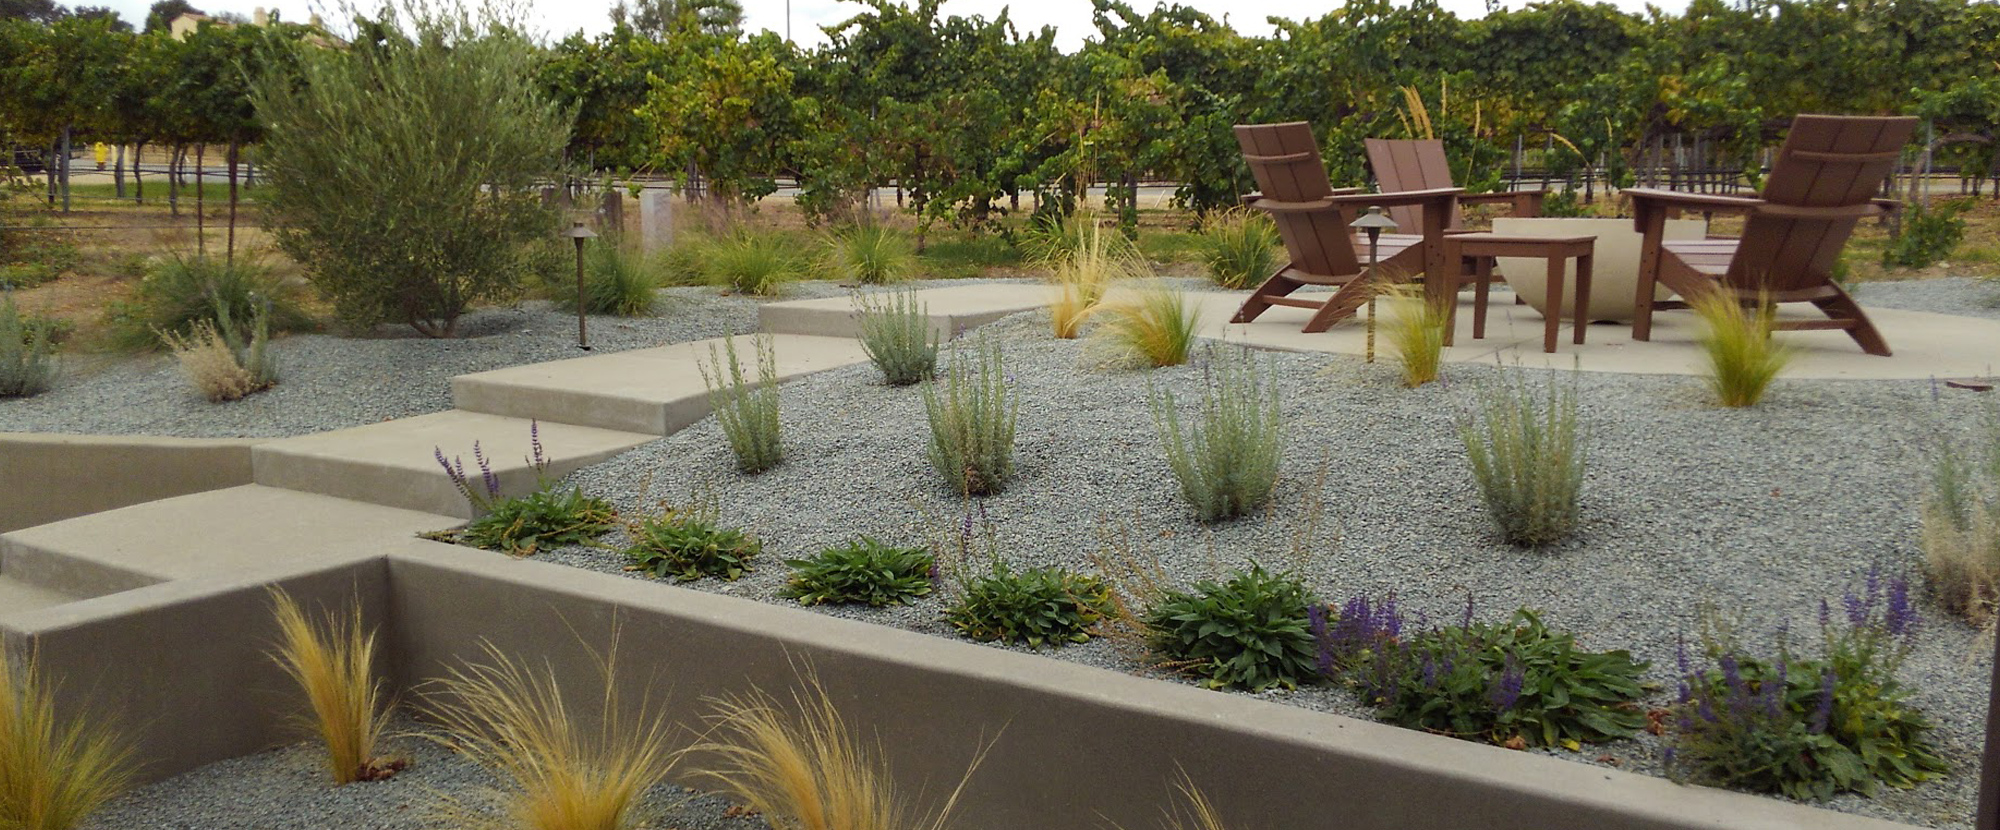 Landscaping Landscape Design Granite, Landscaping Roseville Ca